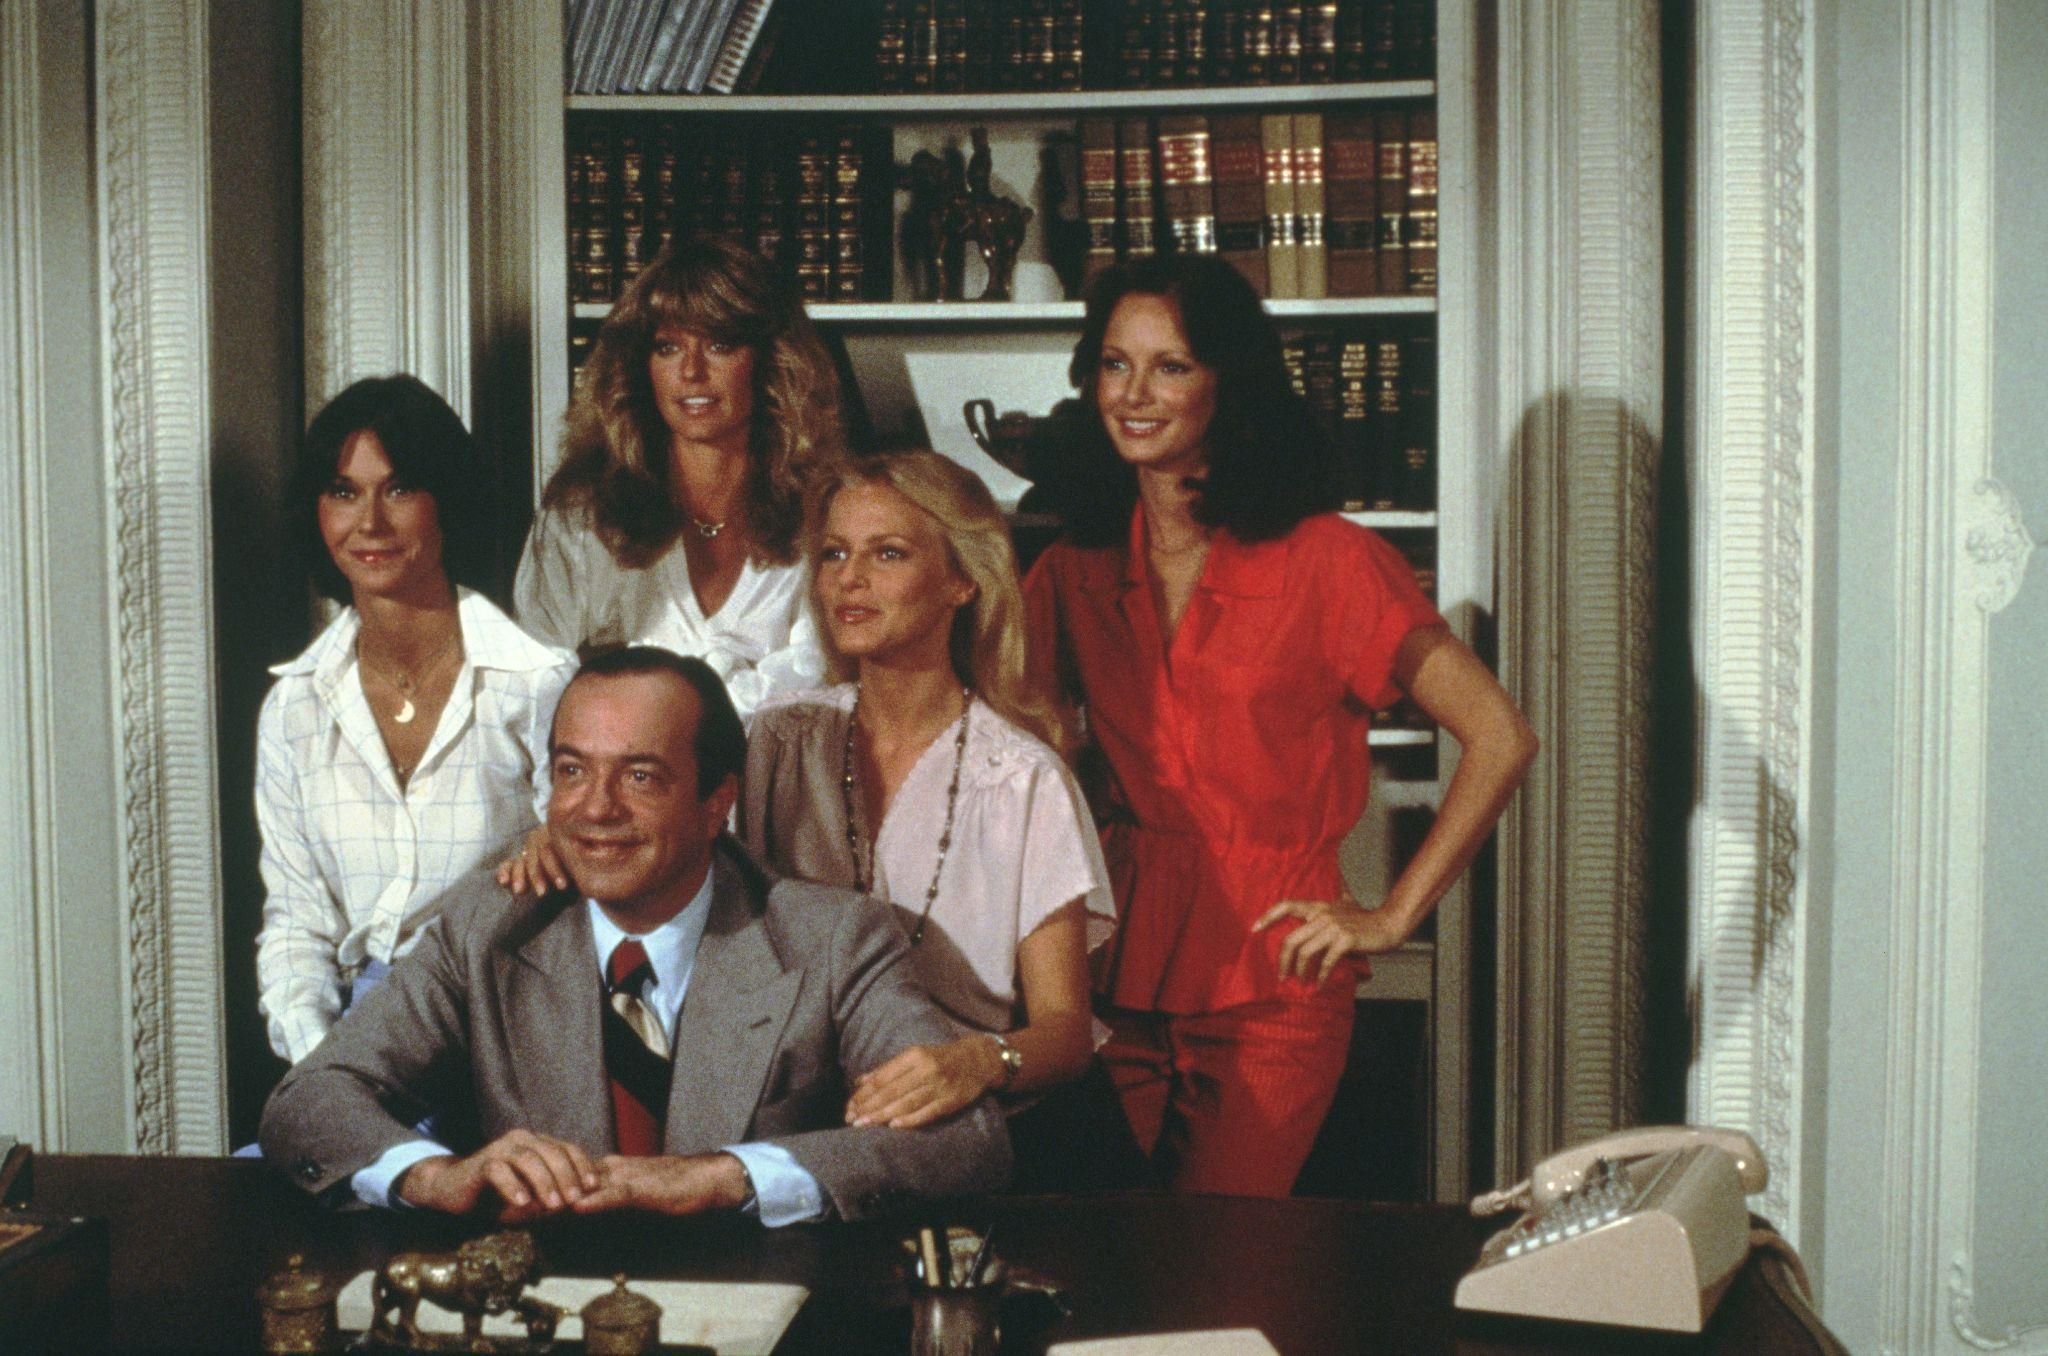 1977 Charlie's Angels (David Doyle, Kate Jackson, Farrah Fawcett, Cheryl Ladd and Jaclyn Smith)